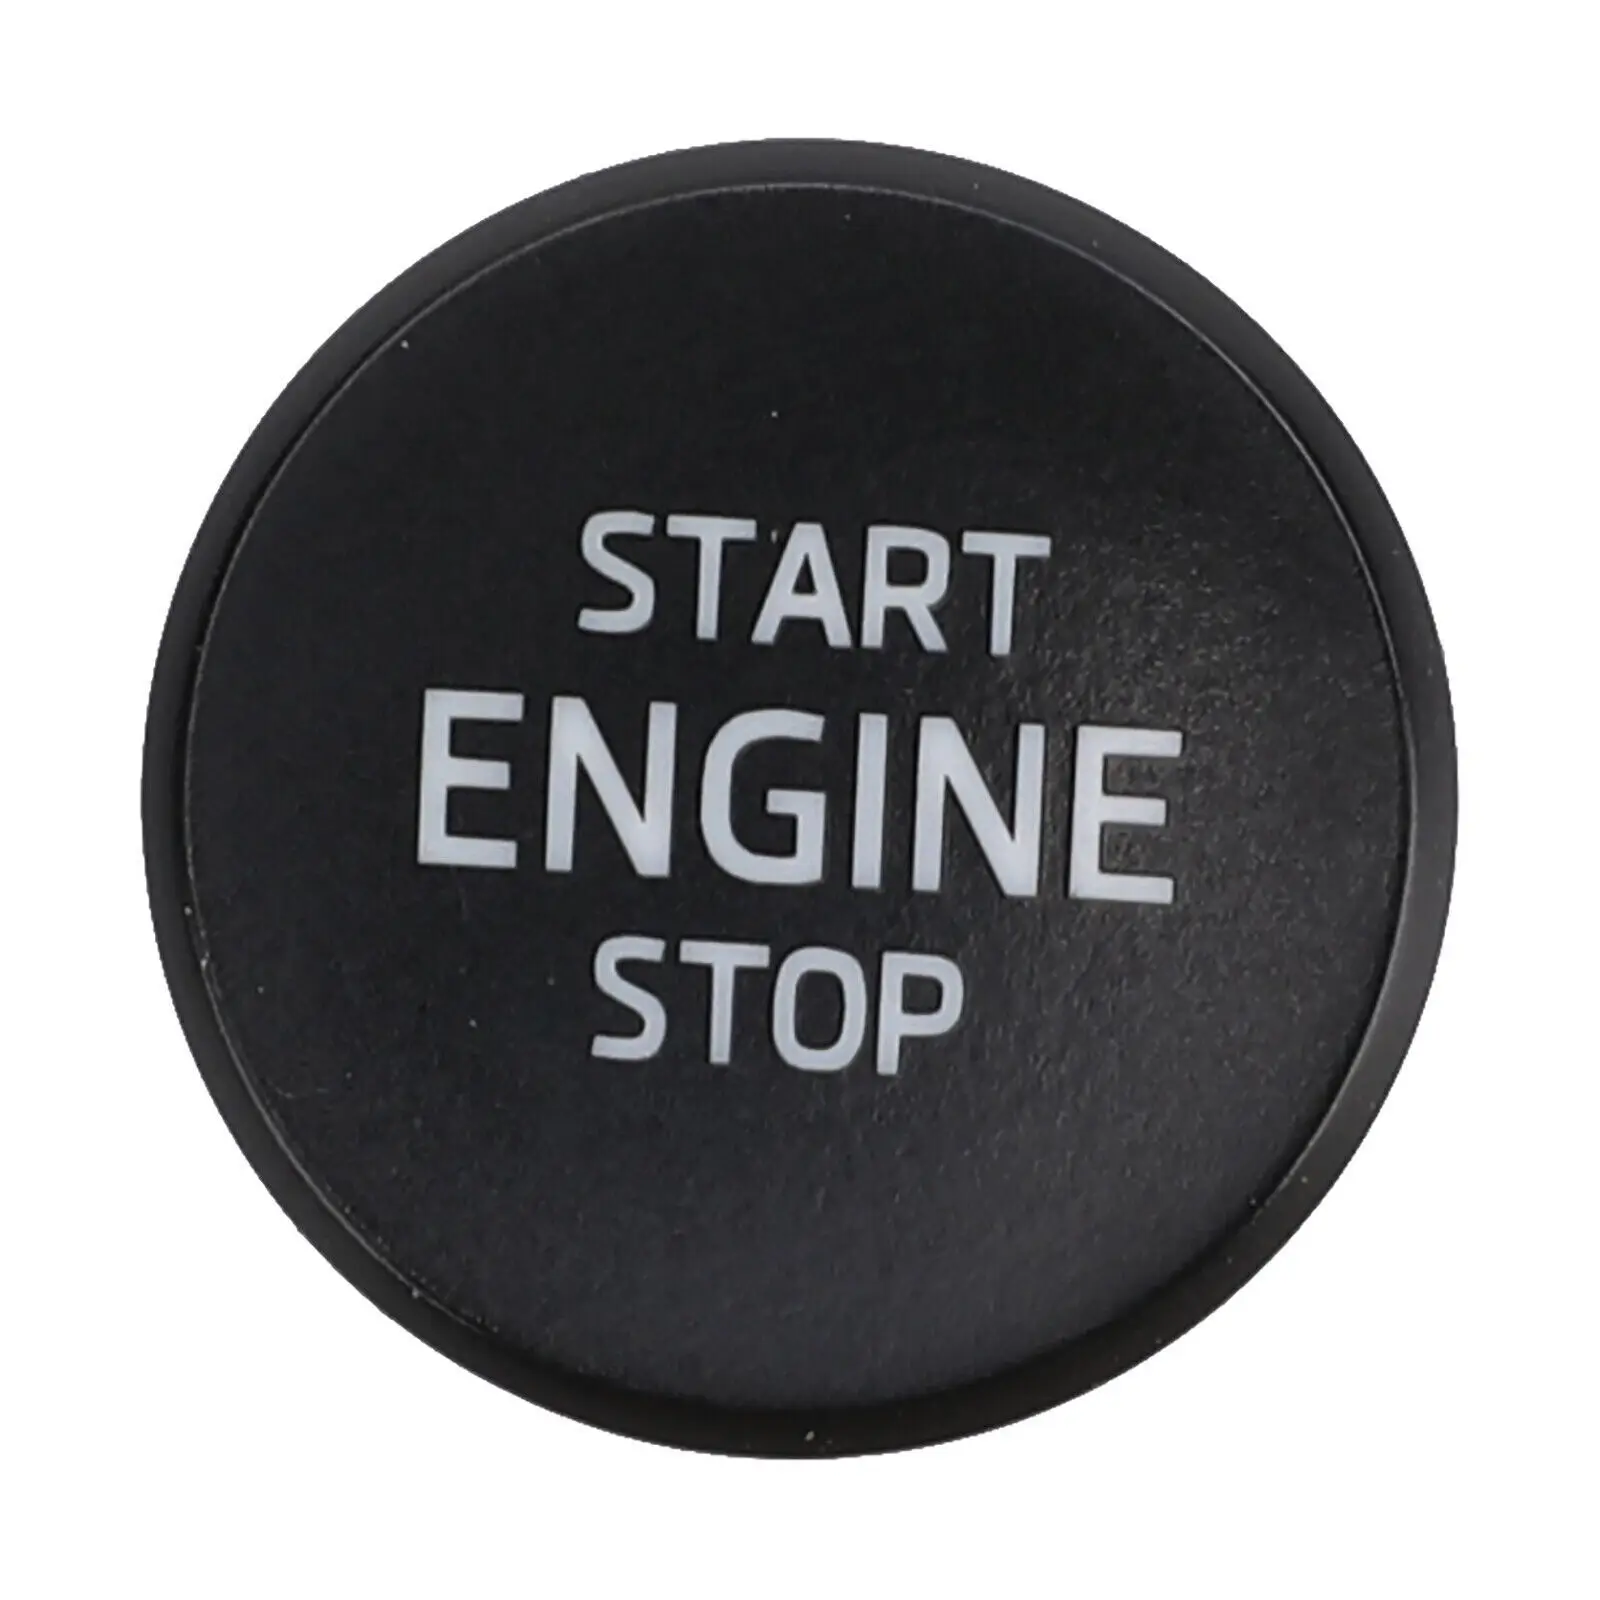 Переключатель Двигателя Автомобиля Кнопка Включения Остановки Двигателя Skoda Scala Karoq Kodiaq 3V0905217 Изображение 2